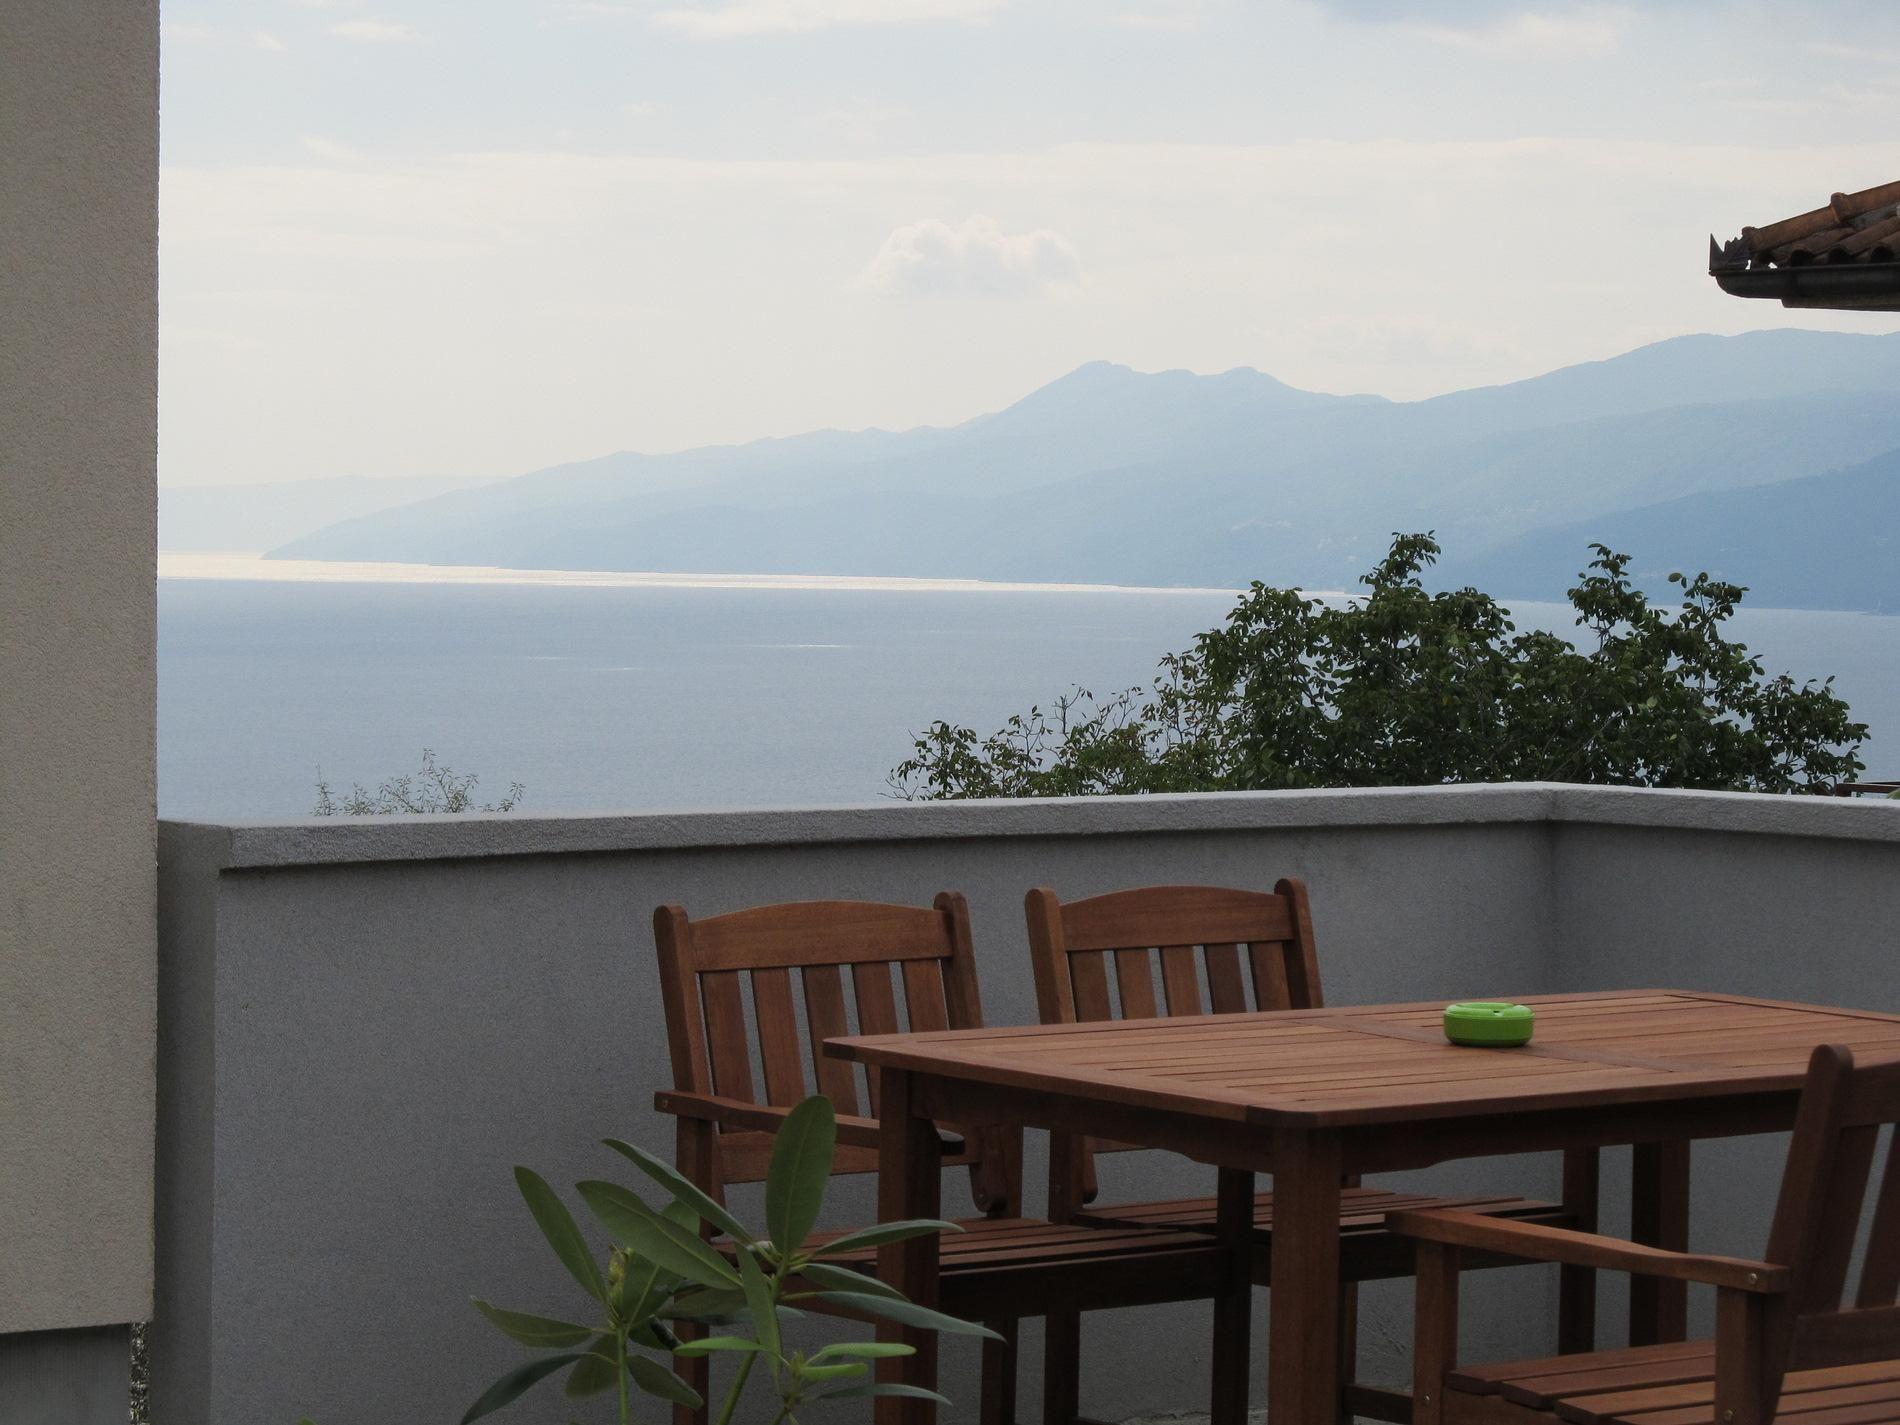  Ferienwohnung mit Terrasse und Meerblick  Ferienhaus in Kroatien